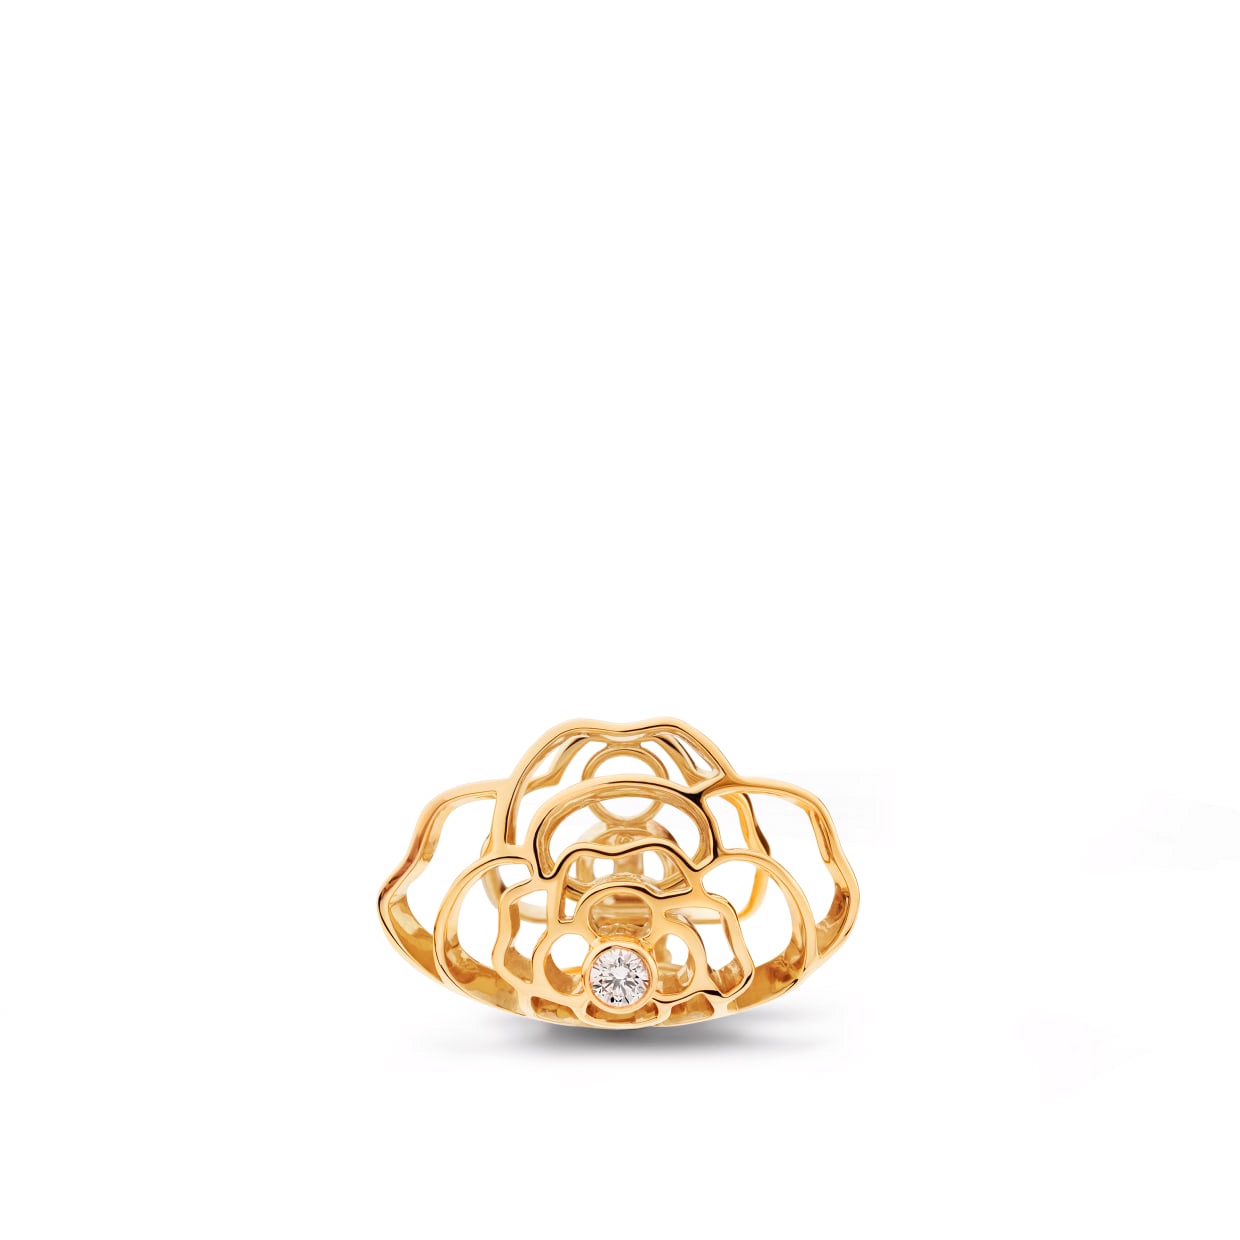 Custom design sterling silver jewelry earring in 18K yellow gold OEM/ODM Jewelry